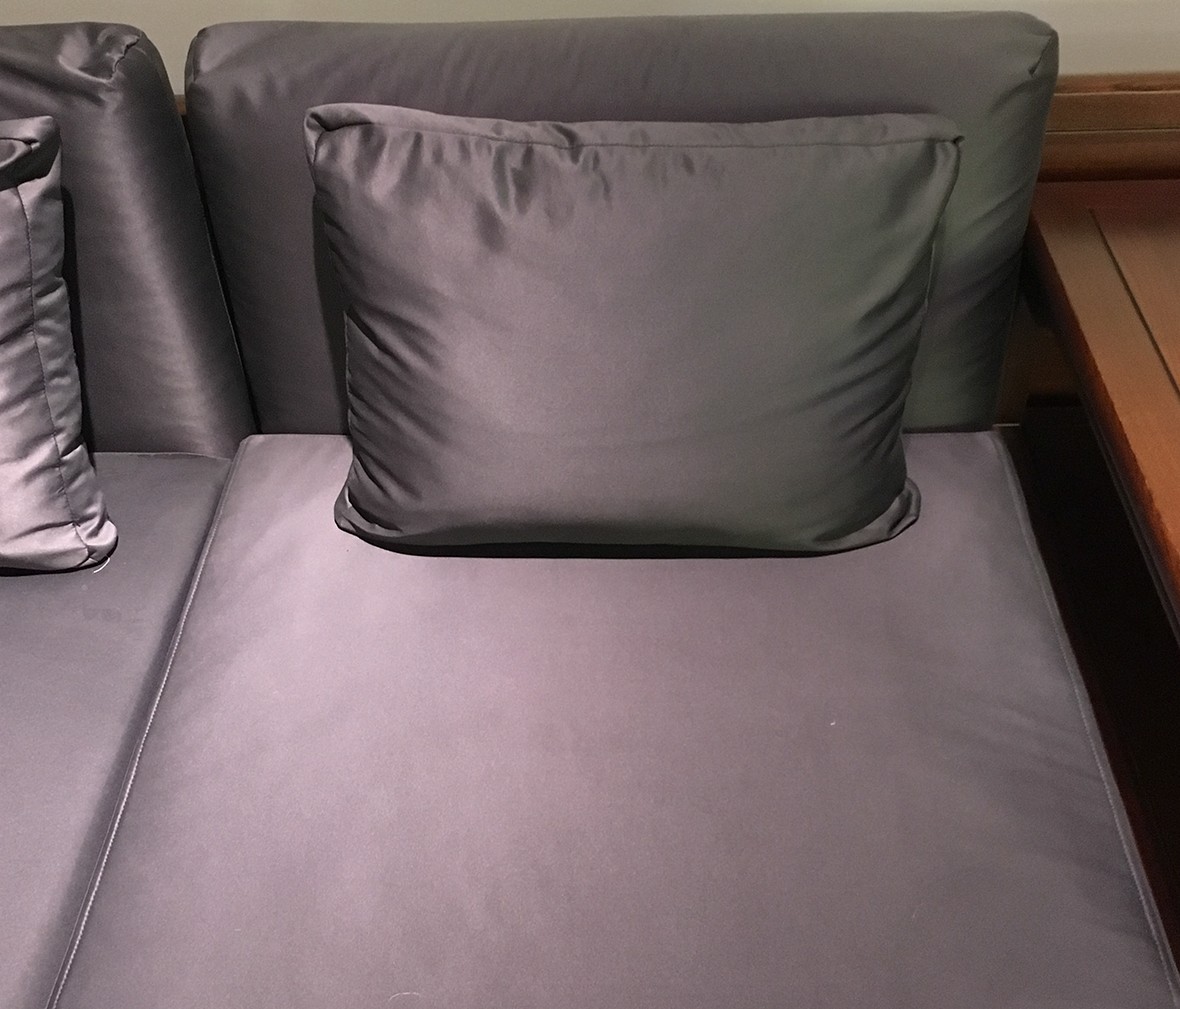 祥华坊家具 XJD-SF00413型号圆腿罗锅枨拐角沙发  中式古典家具